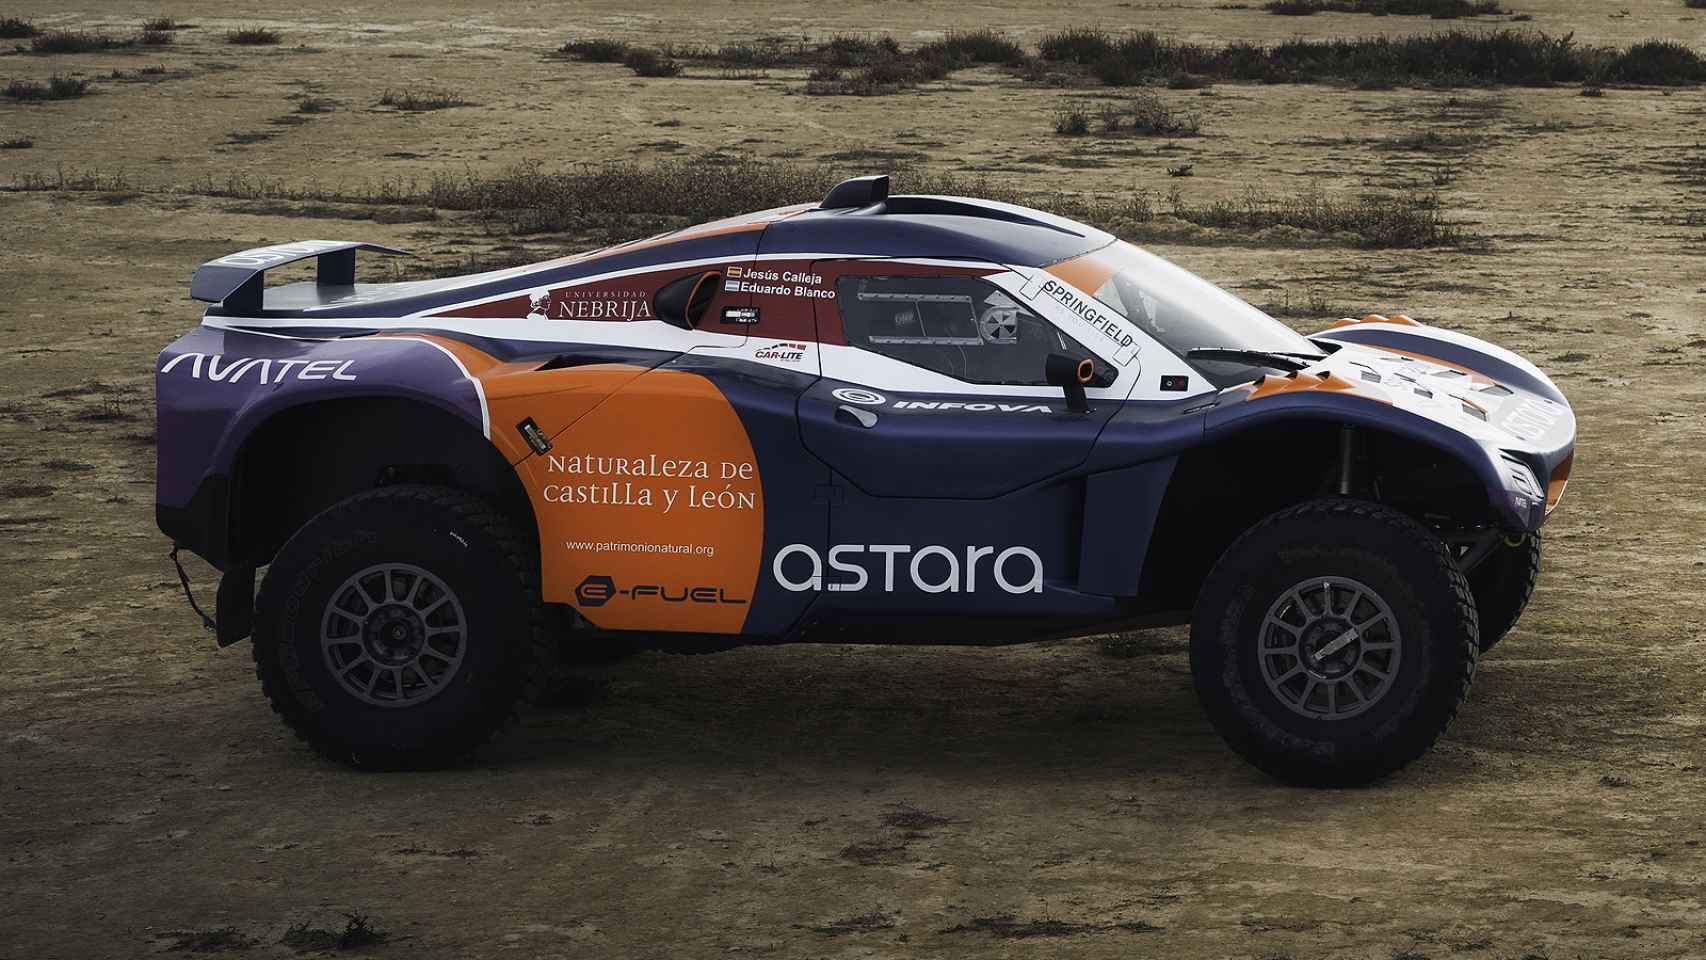 Calleja, nuevo piloto de 'Astara Team'. el año pasado finalizó el Dakar en el puesto 29.